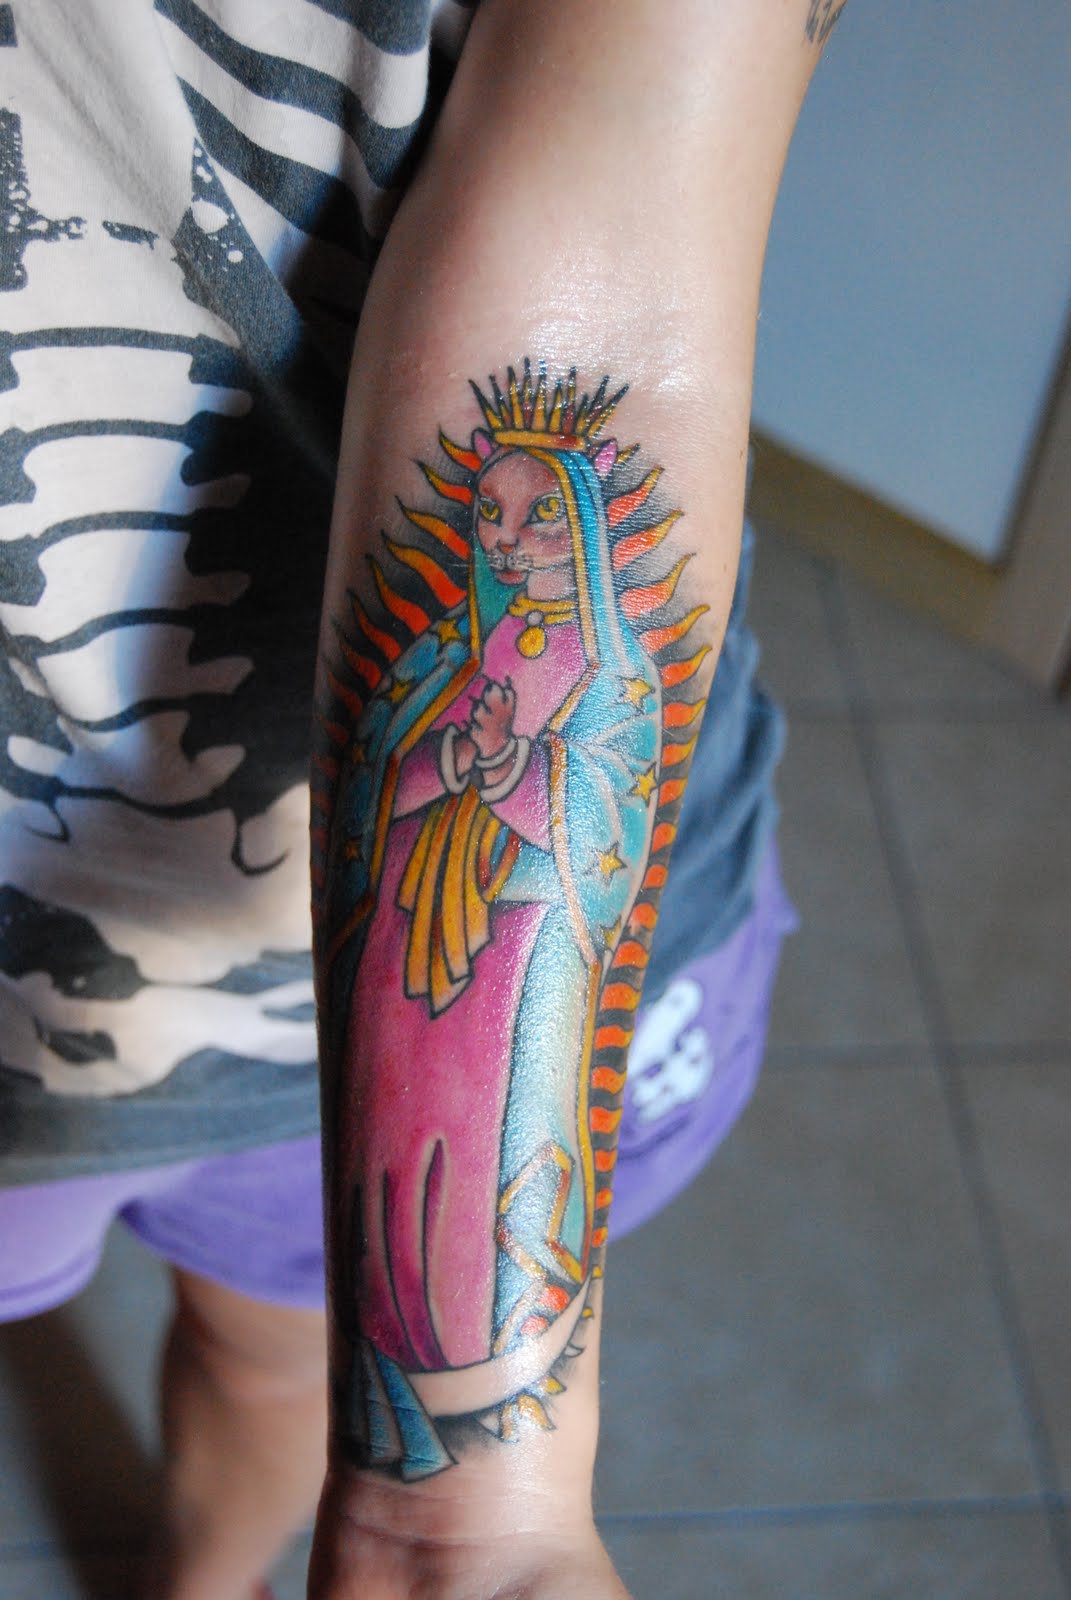 http://4.bp.blogspot.com/-kjdYQO_nOa4/TogYEBBJr3I/AAAAAAAAAUY/BzOqB-6QsnM/s1600/tattoo+madonna.jpg